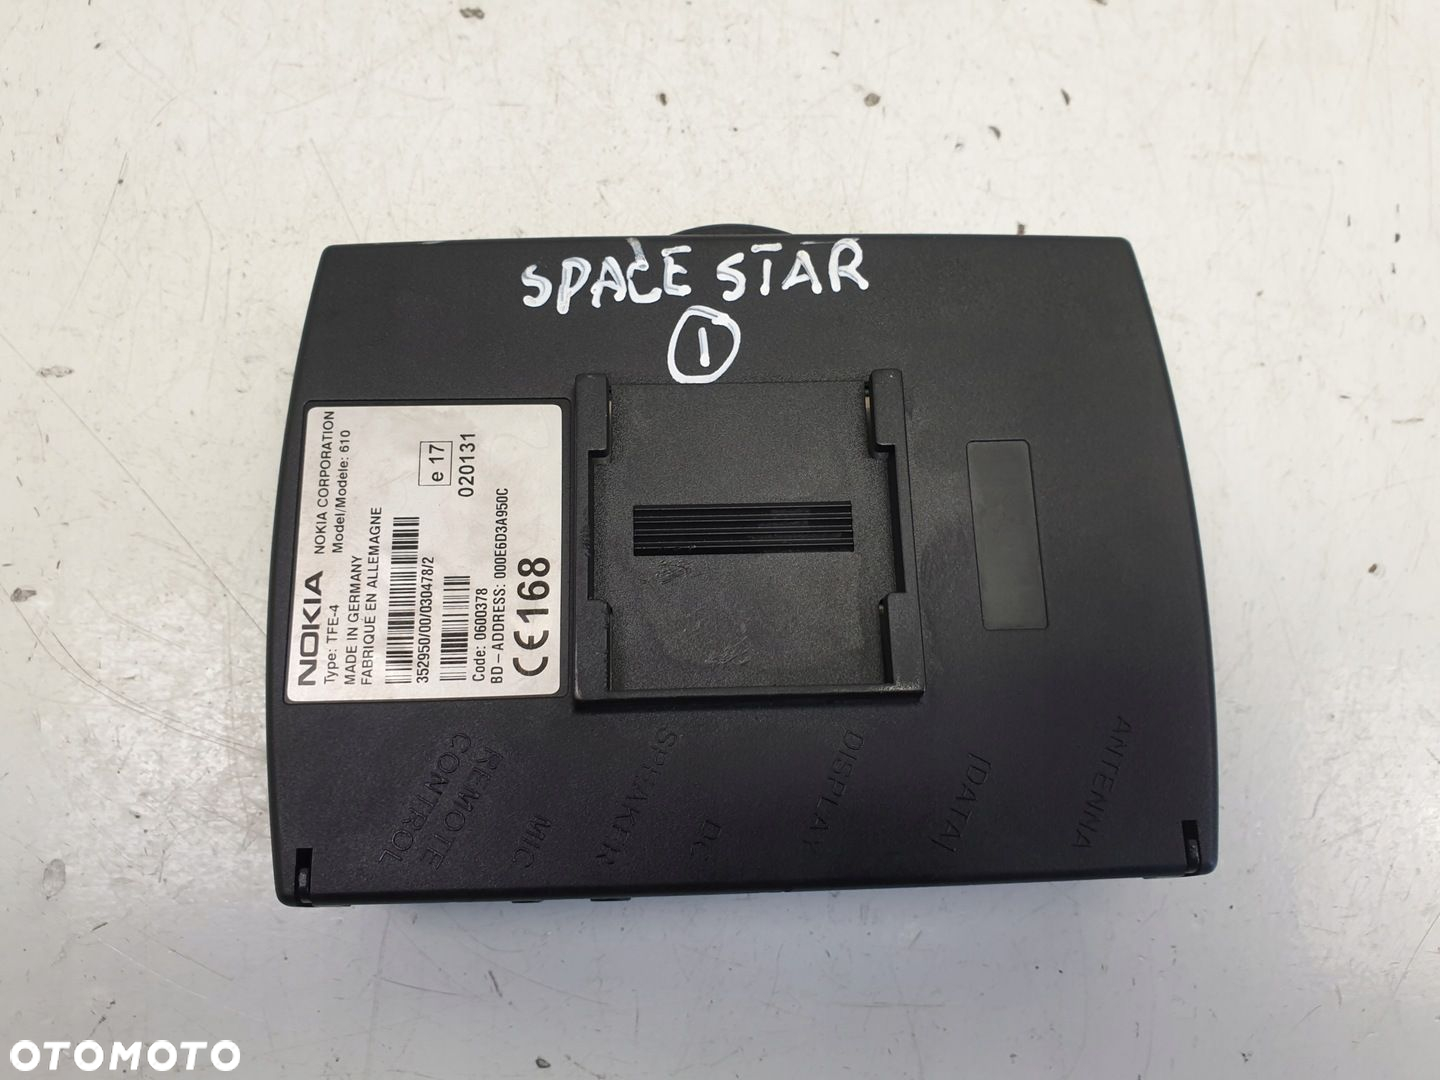 Space Star ZESTAW GŁOŚNOMÓWIĄCY Nokia TFE-4 610 - 4